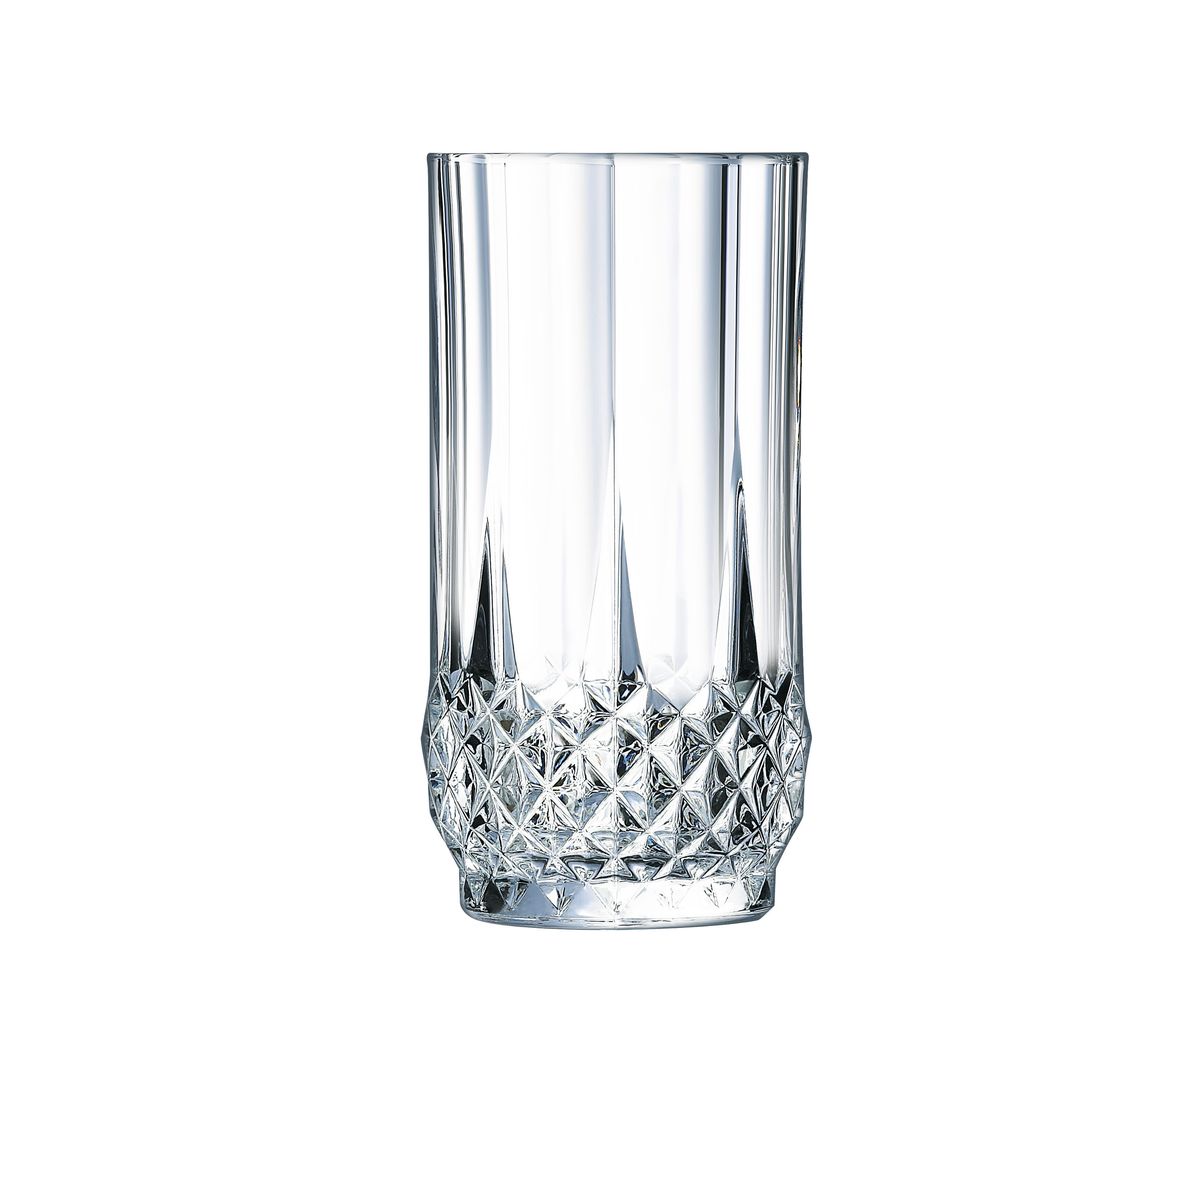 6 verres à eau vintage 28cl longchamp - cristal d'arques - verre ultr